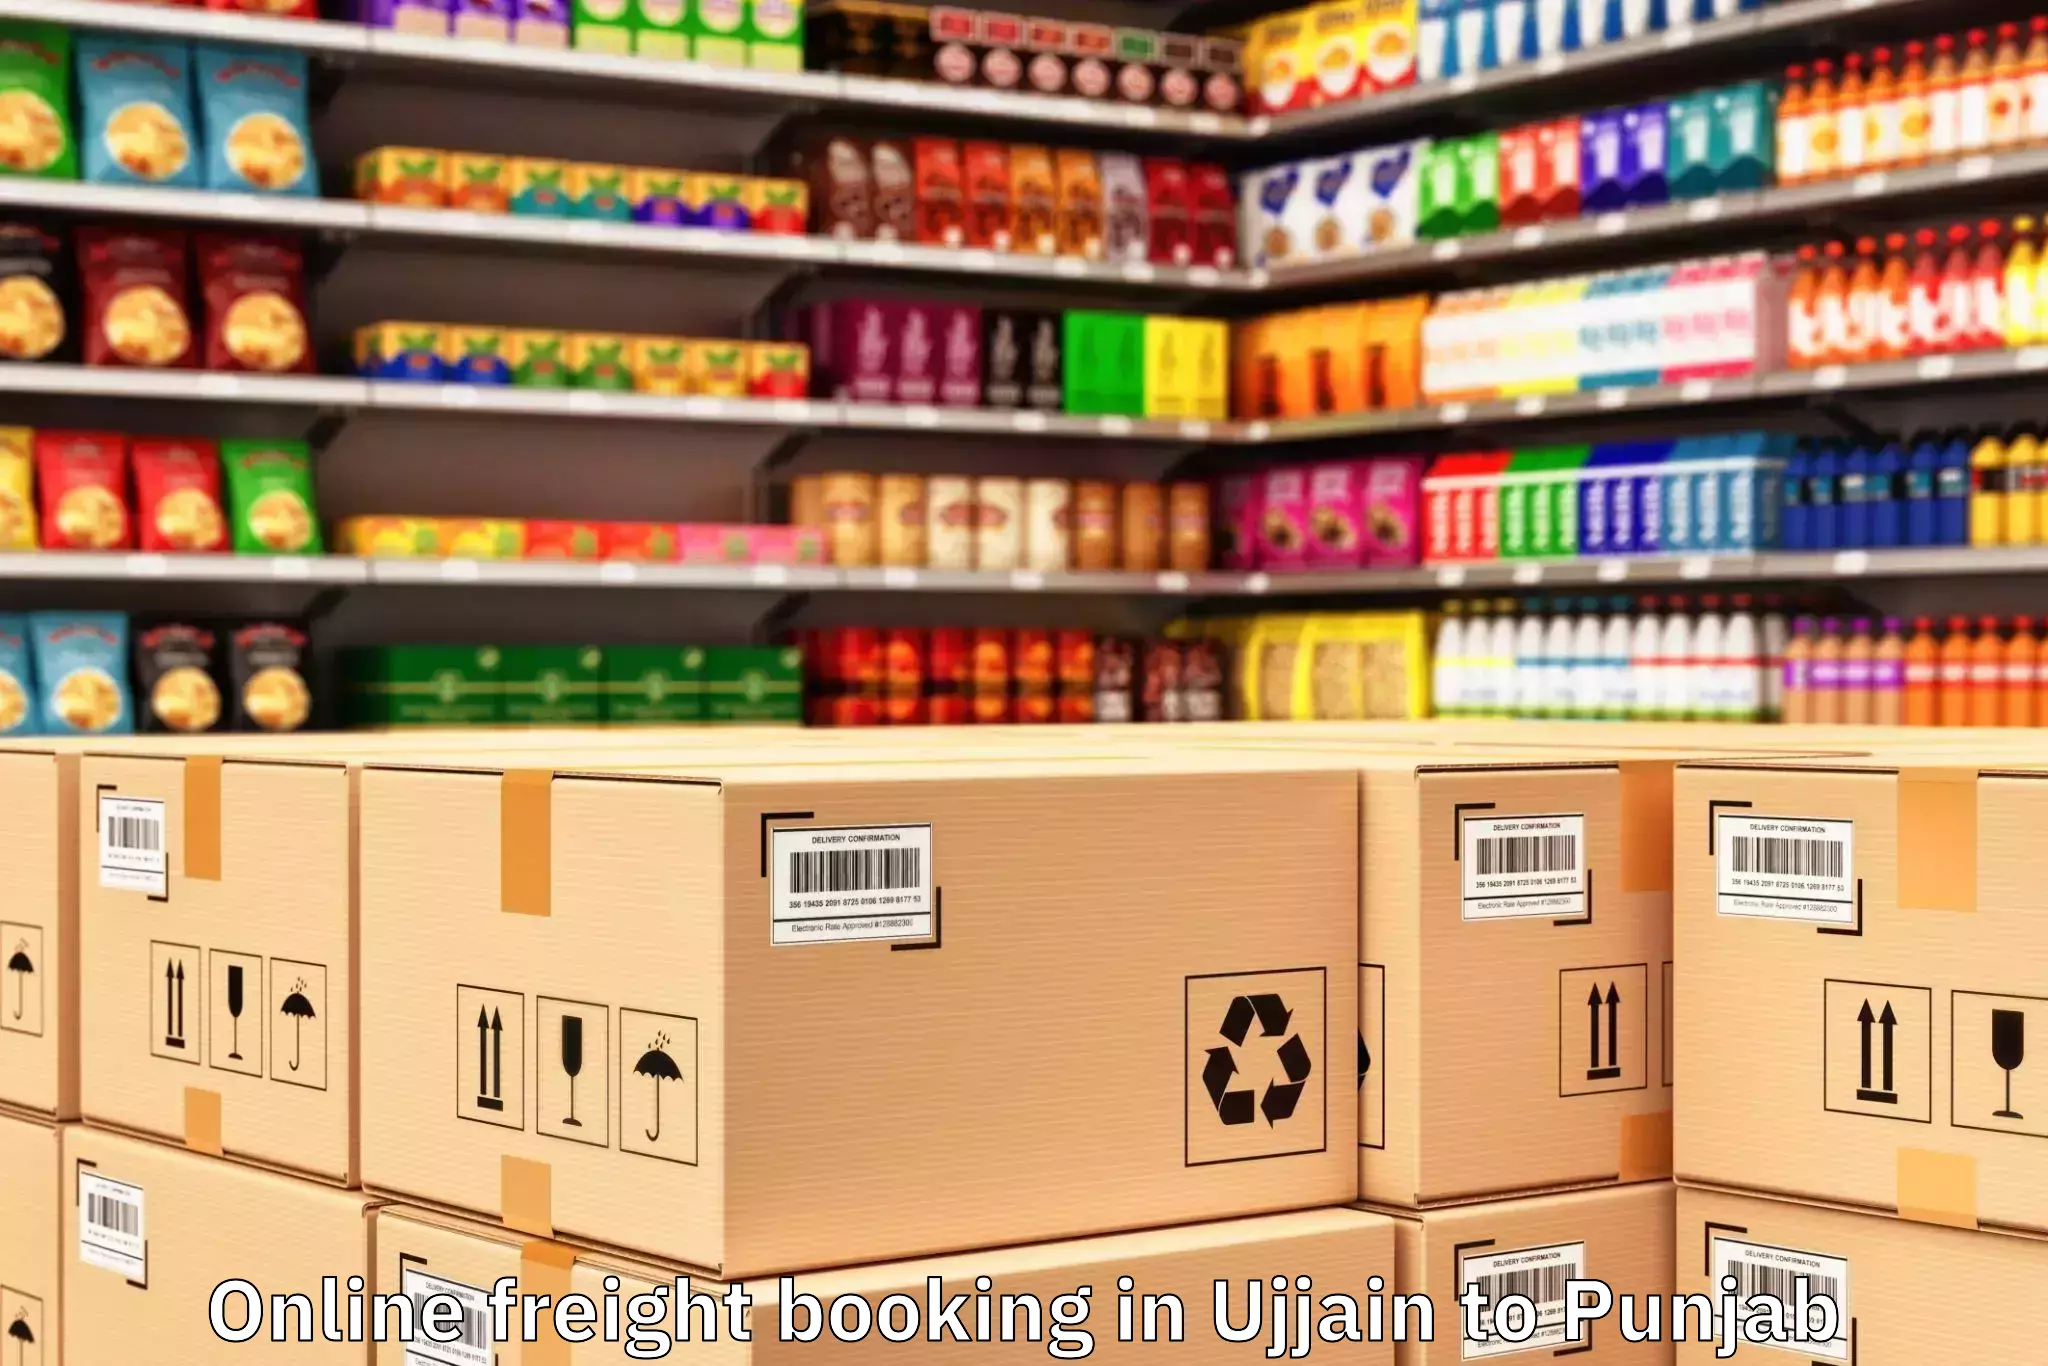 Book Ujjain to Punjab Online Freight Booking